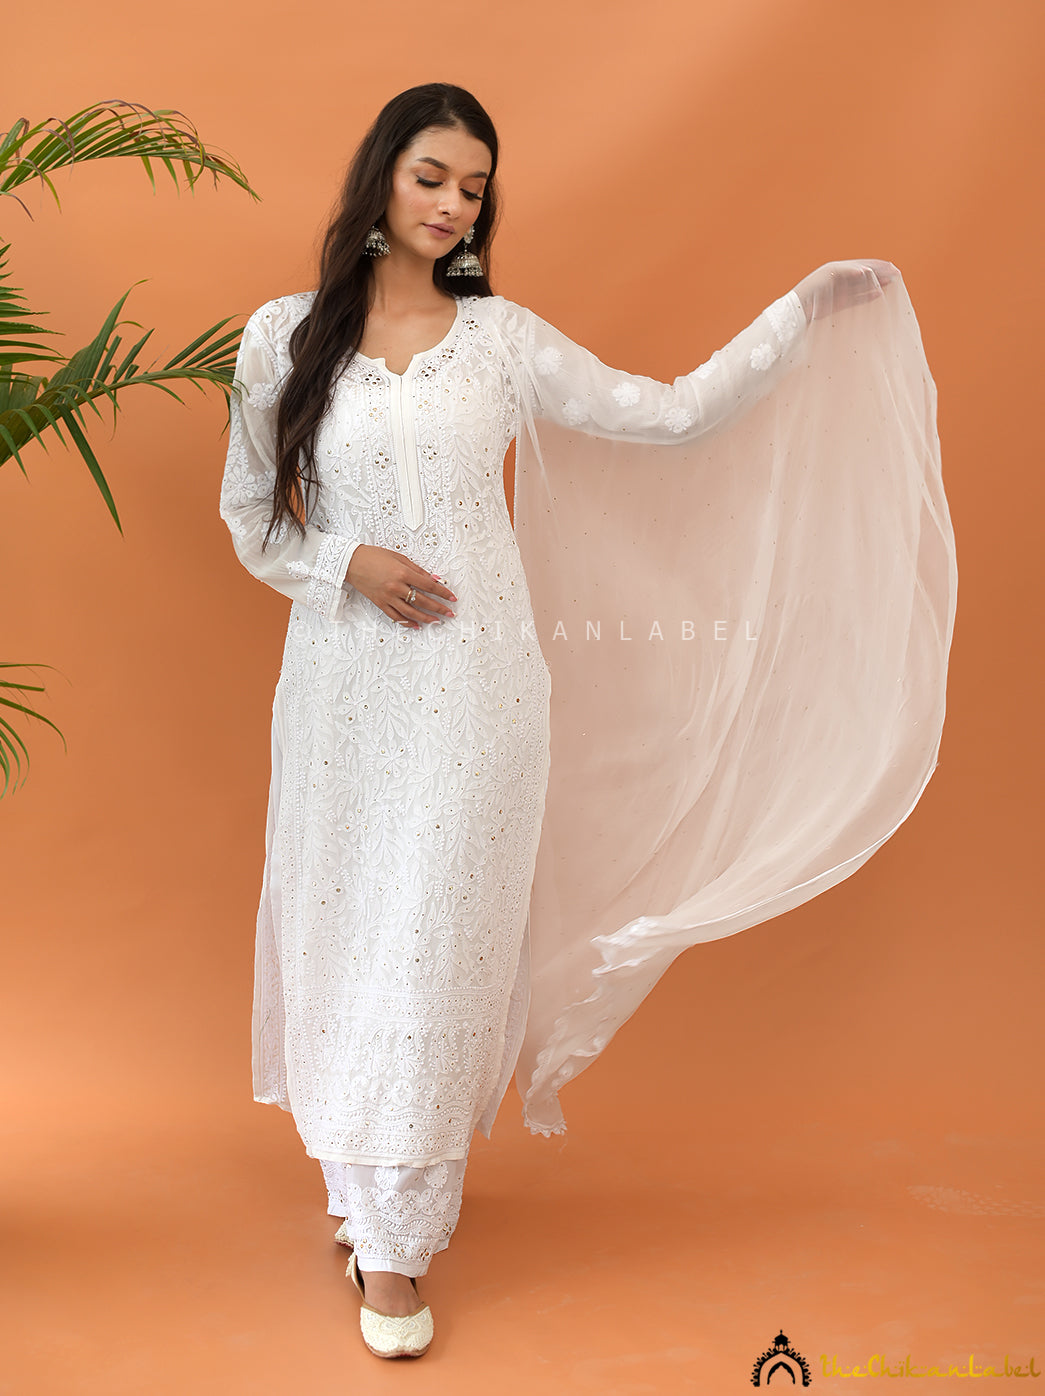 Cotton Suits - Buy Cotton Salwar Suits Designs online at best prices -  Flipkart.com